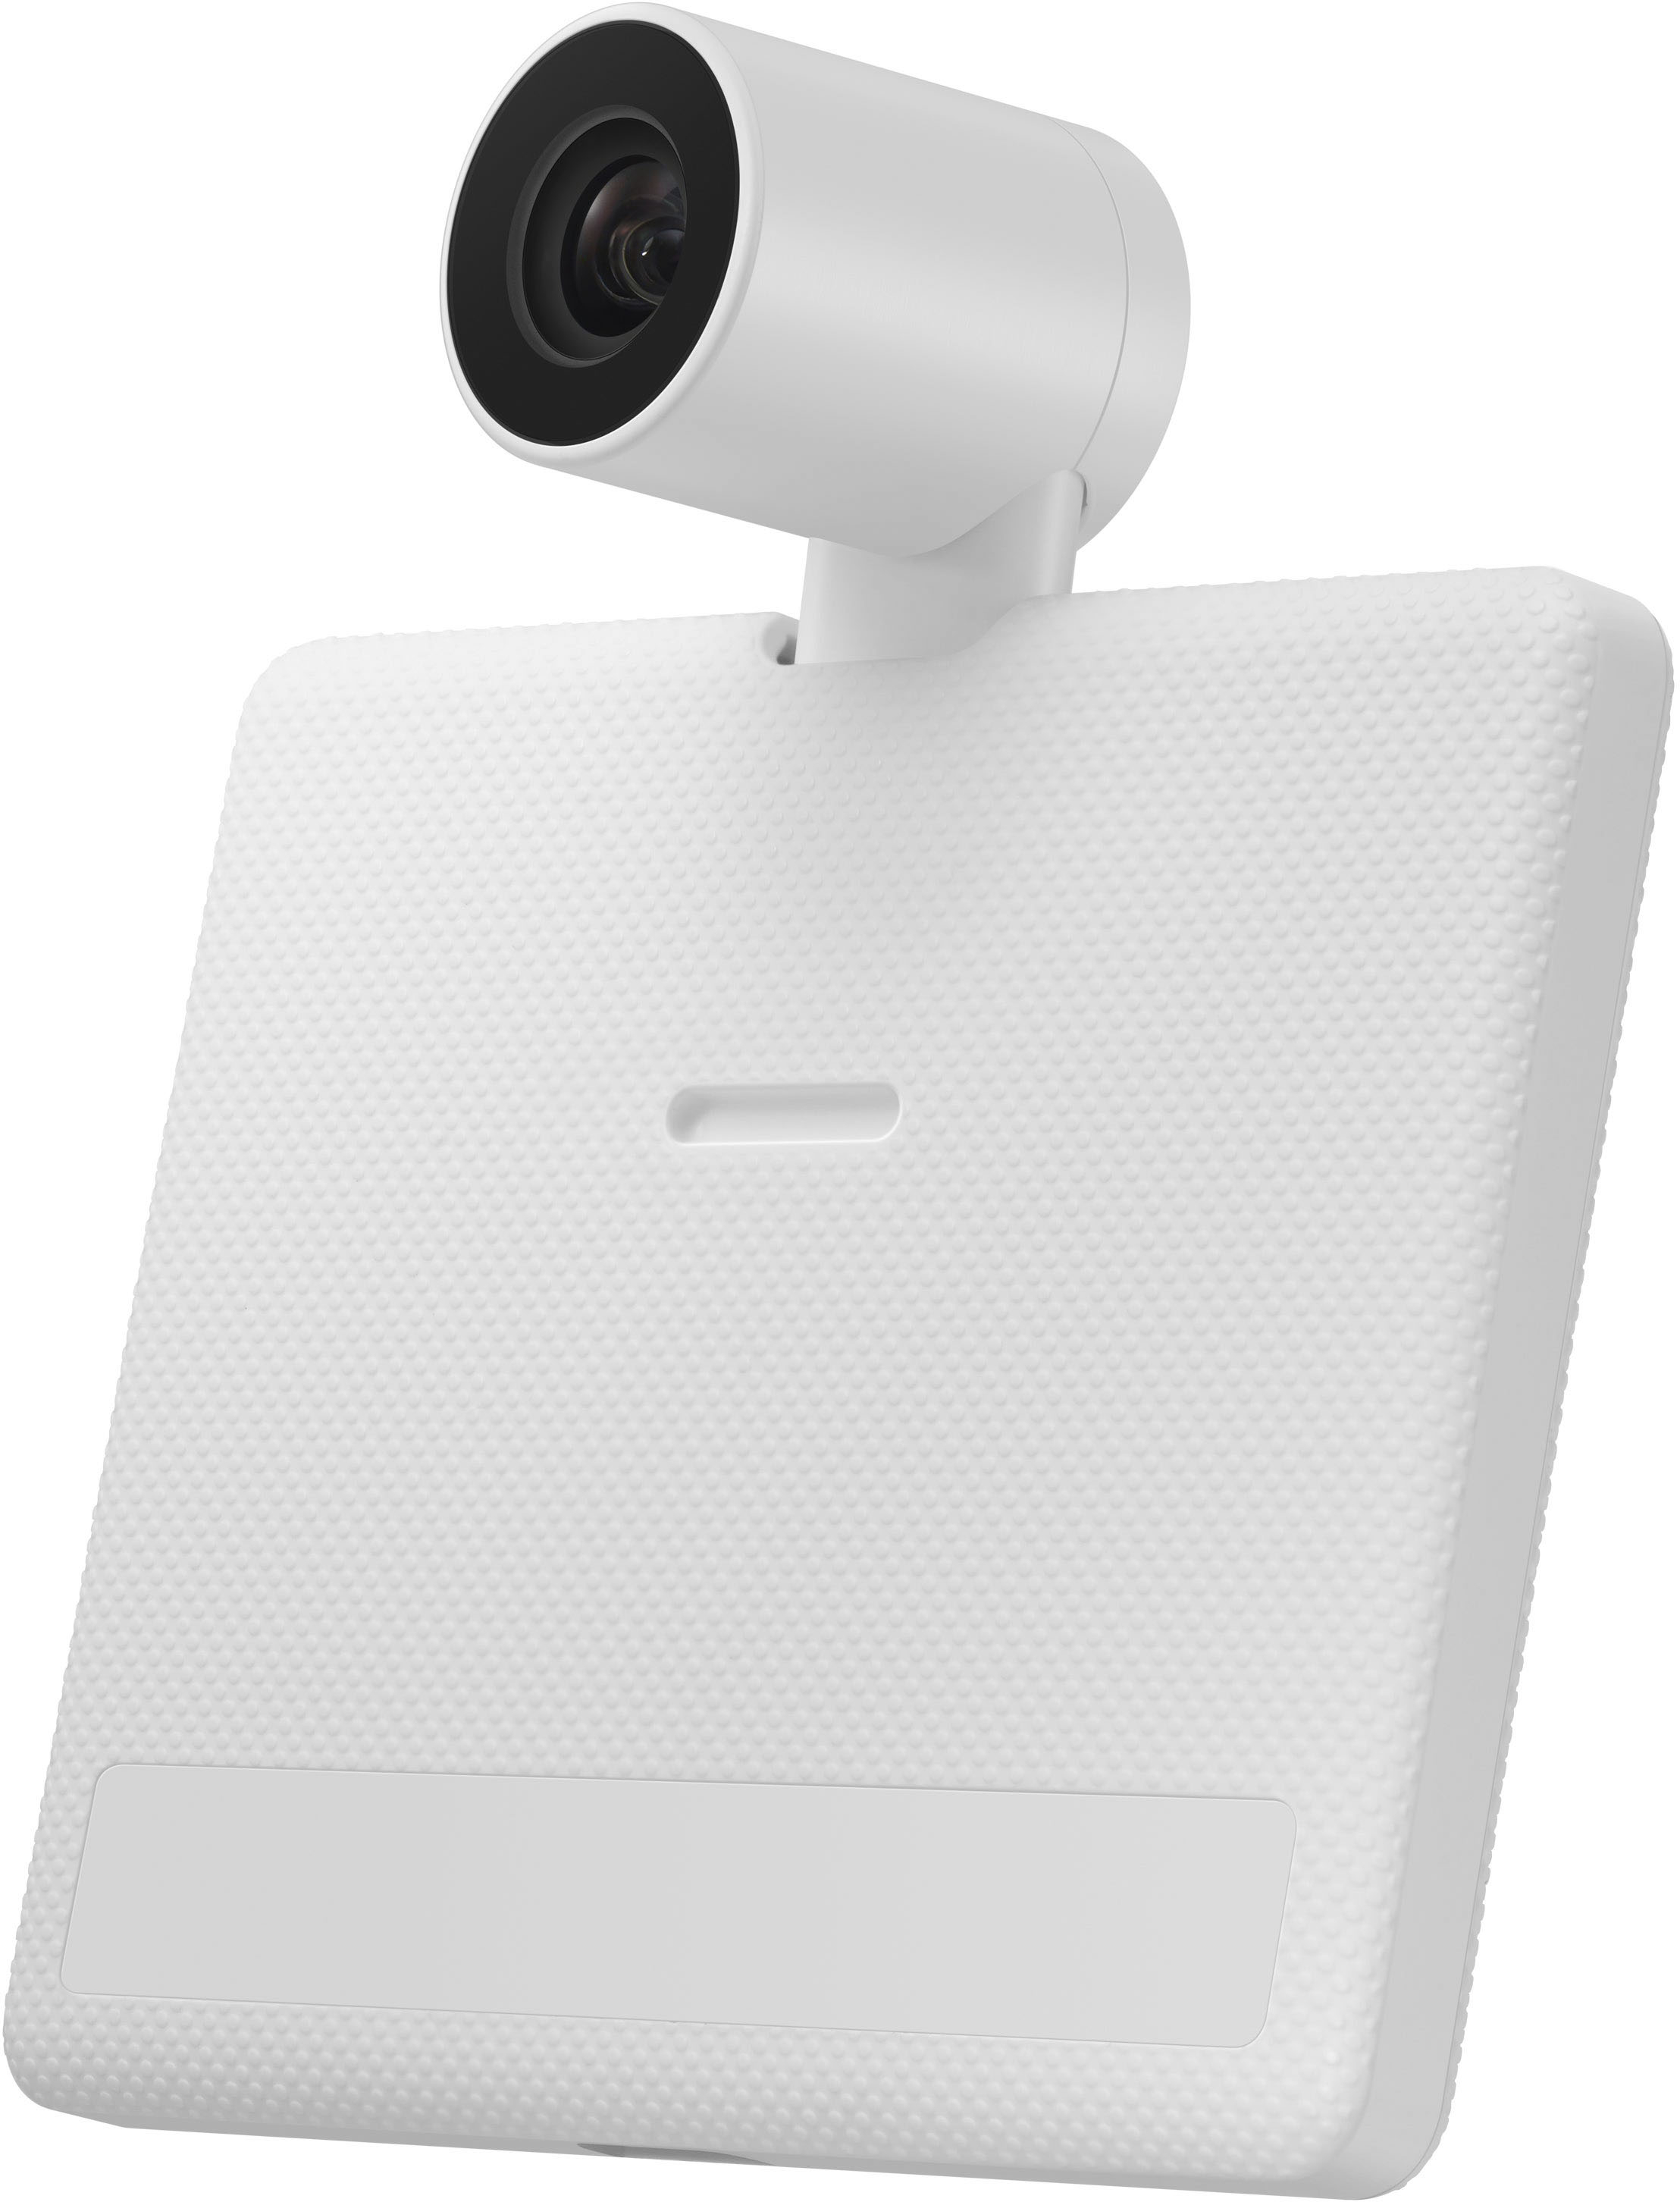 Samsung 32 M8 4K HDR Smart Monitor (White) LS32BM801UNXGO B&H